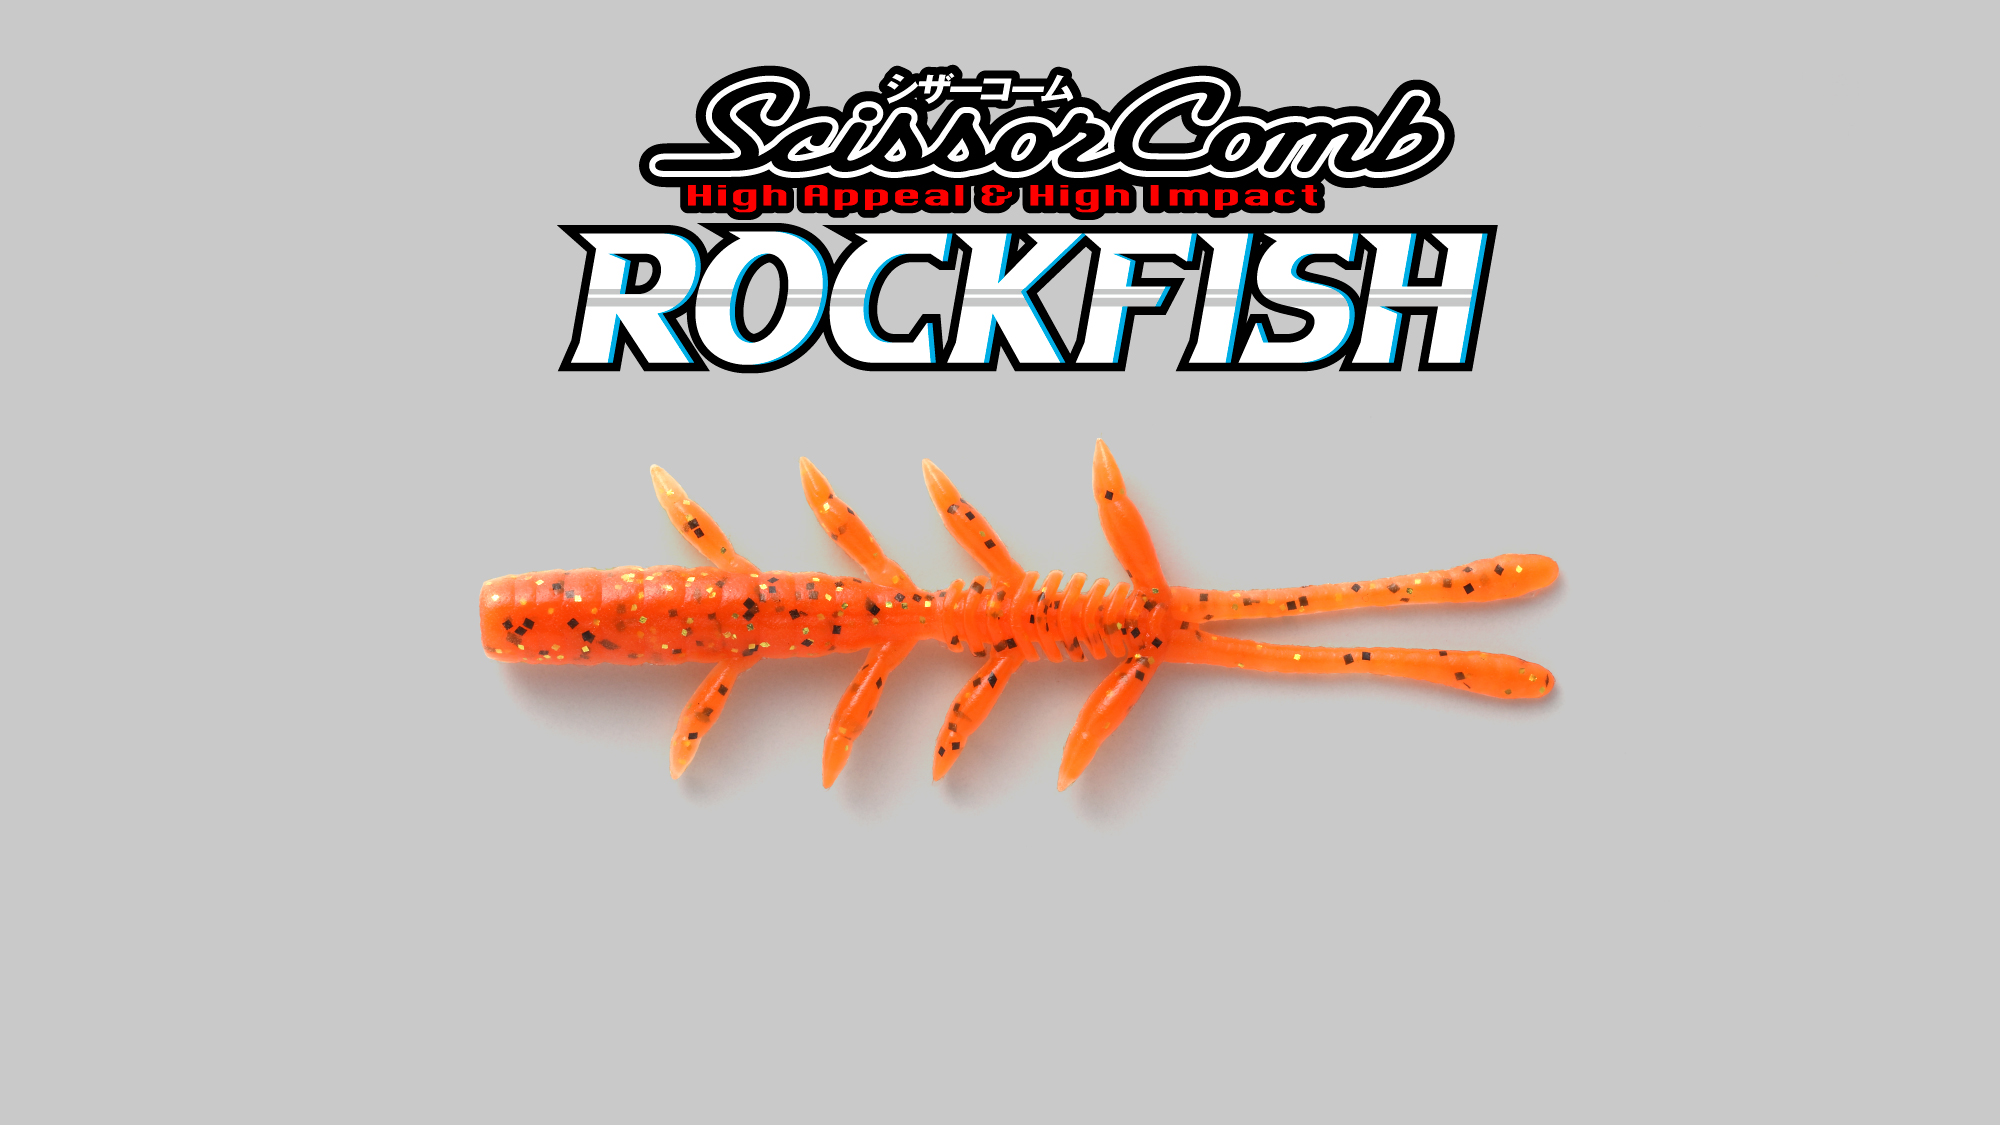 シザーコームロック Scissor Comb Rock Fish